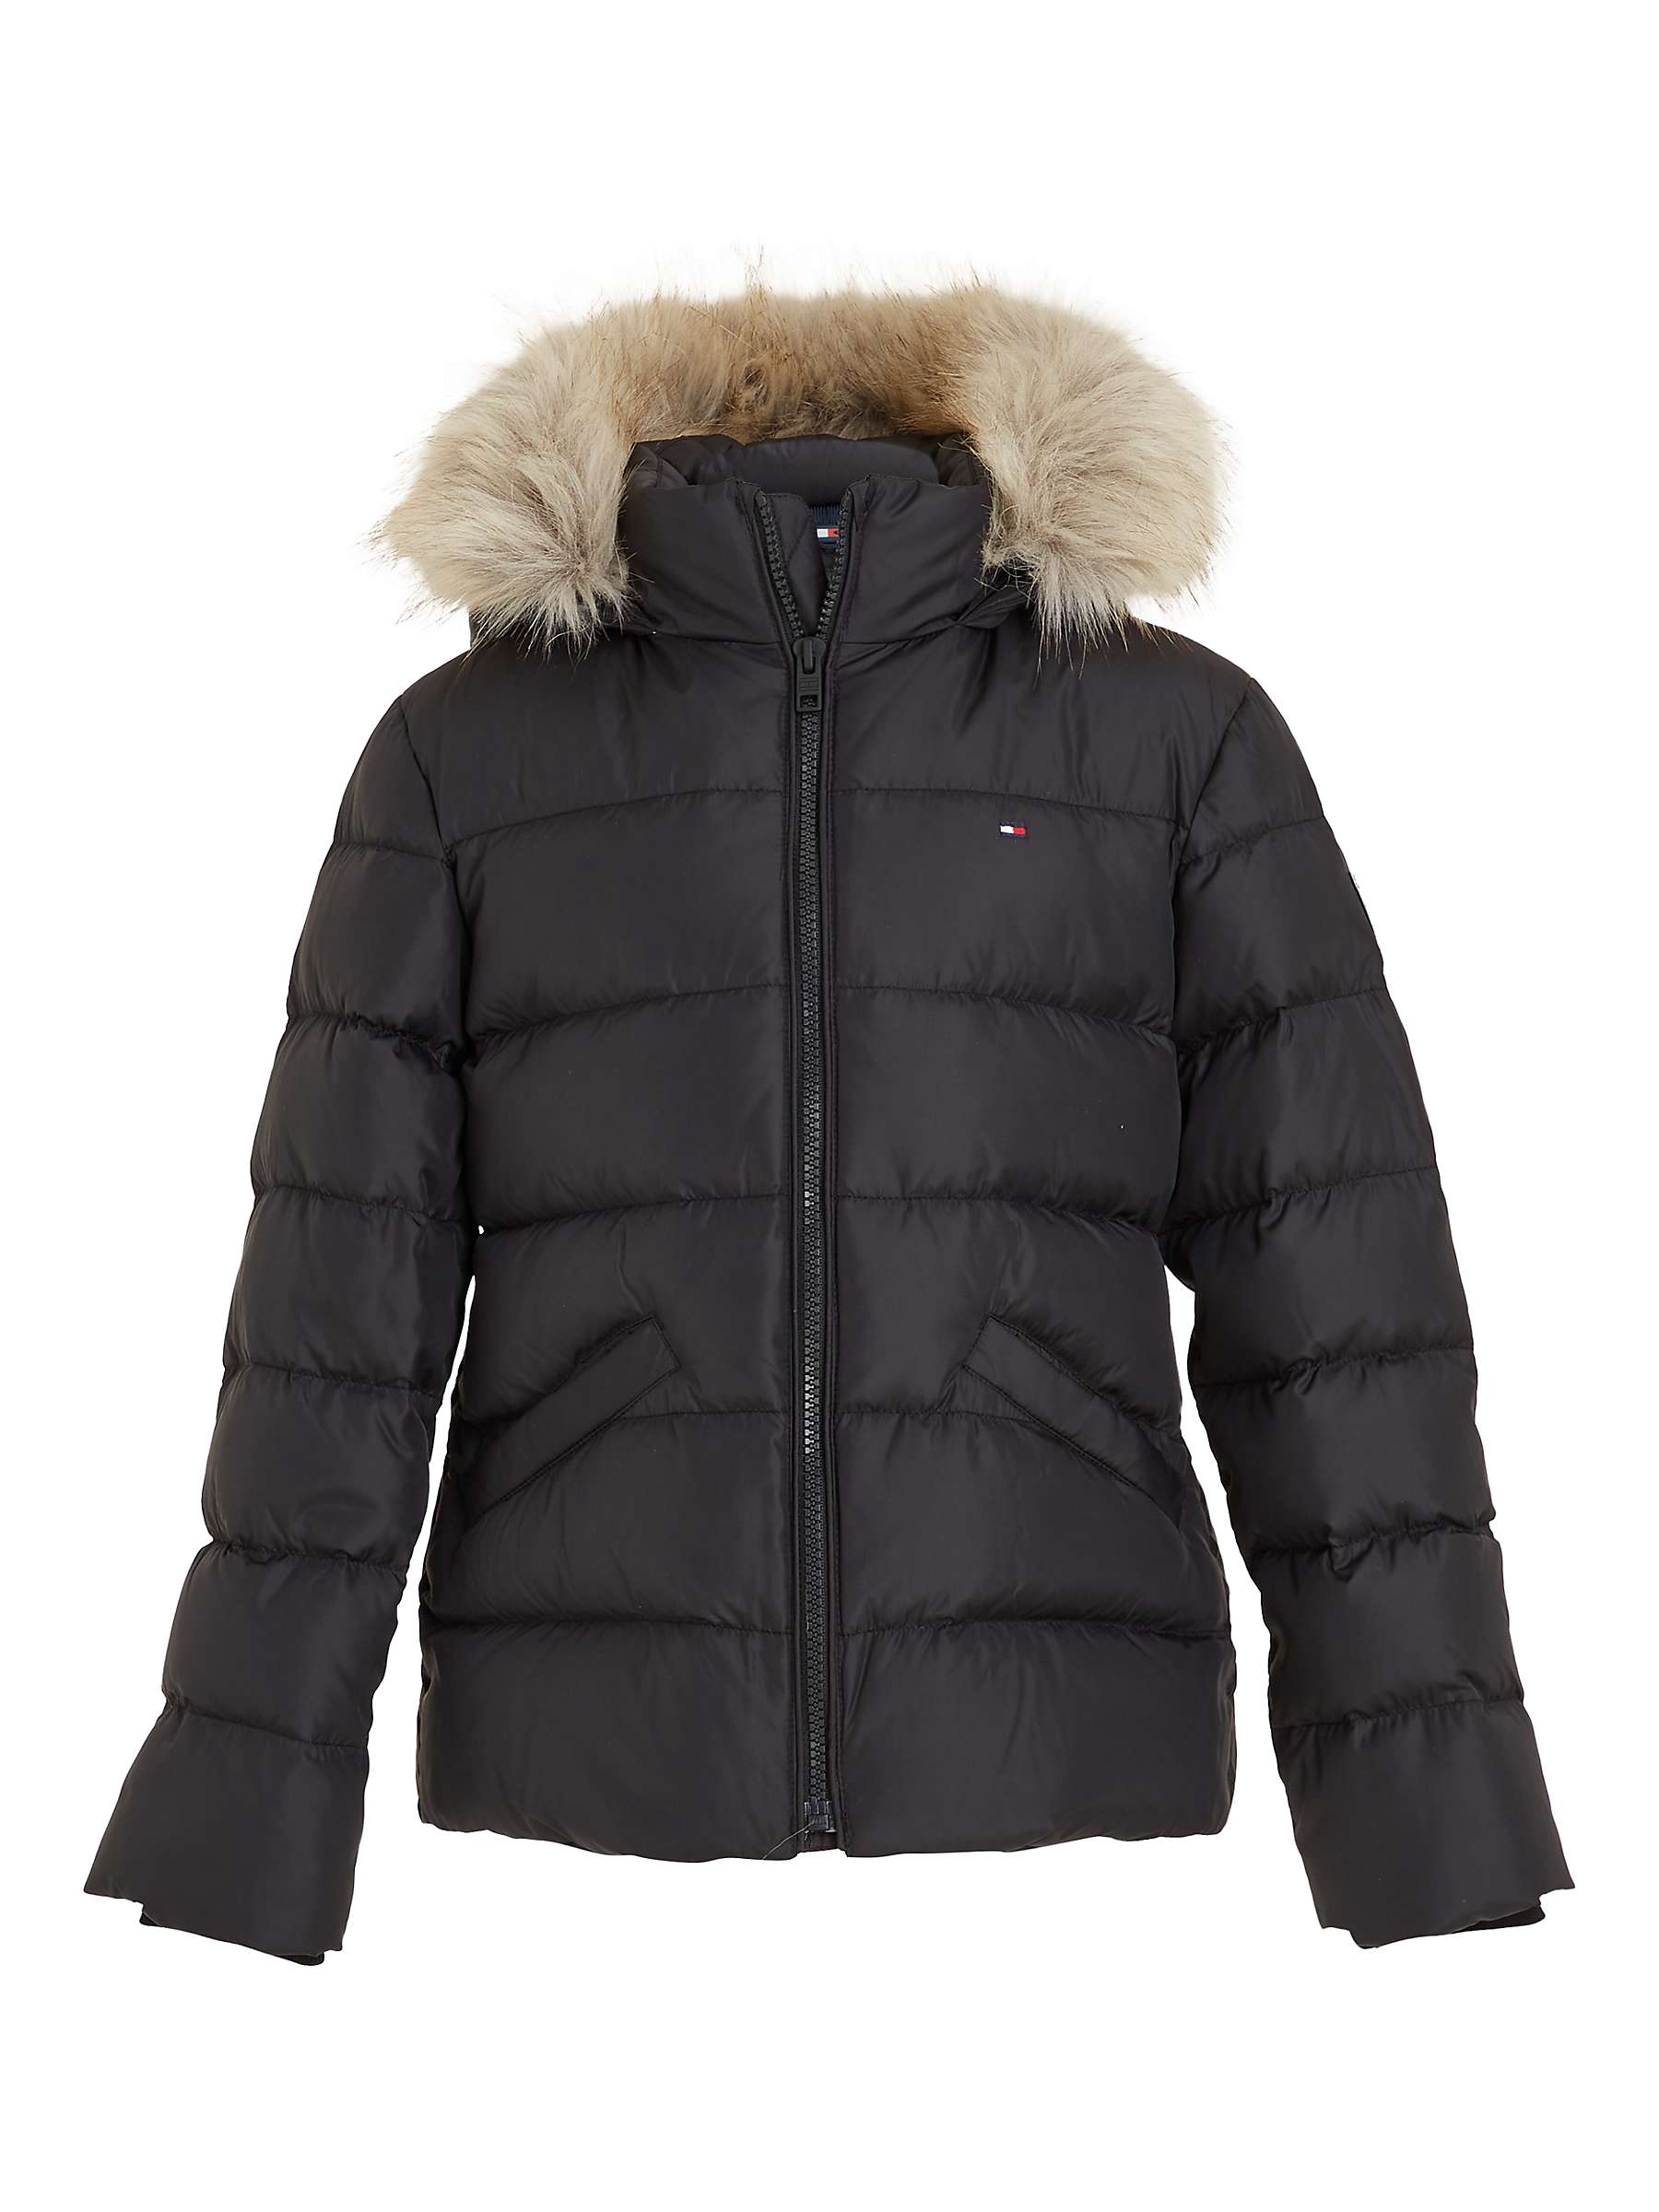 Buy Tommy Hilfiger Kids' Fur Hood Puffer Jacket, Black Online at johnlewis.com